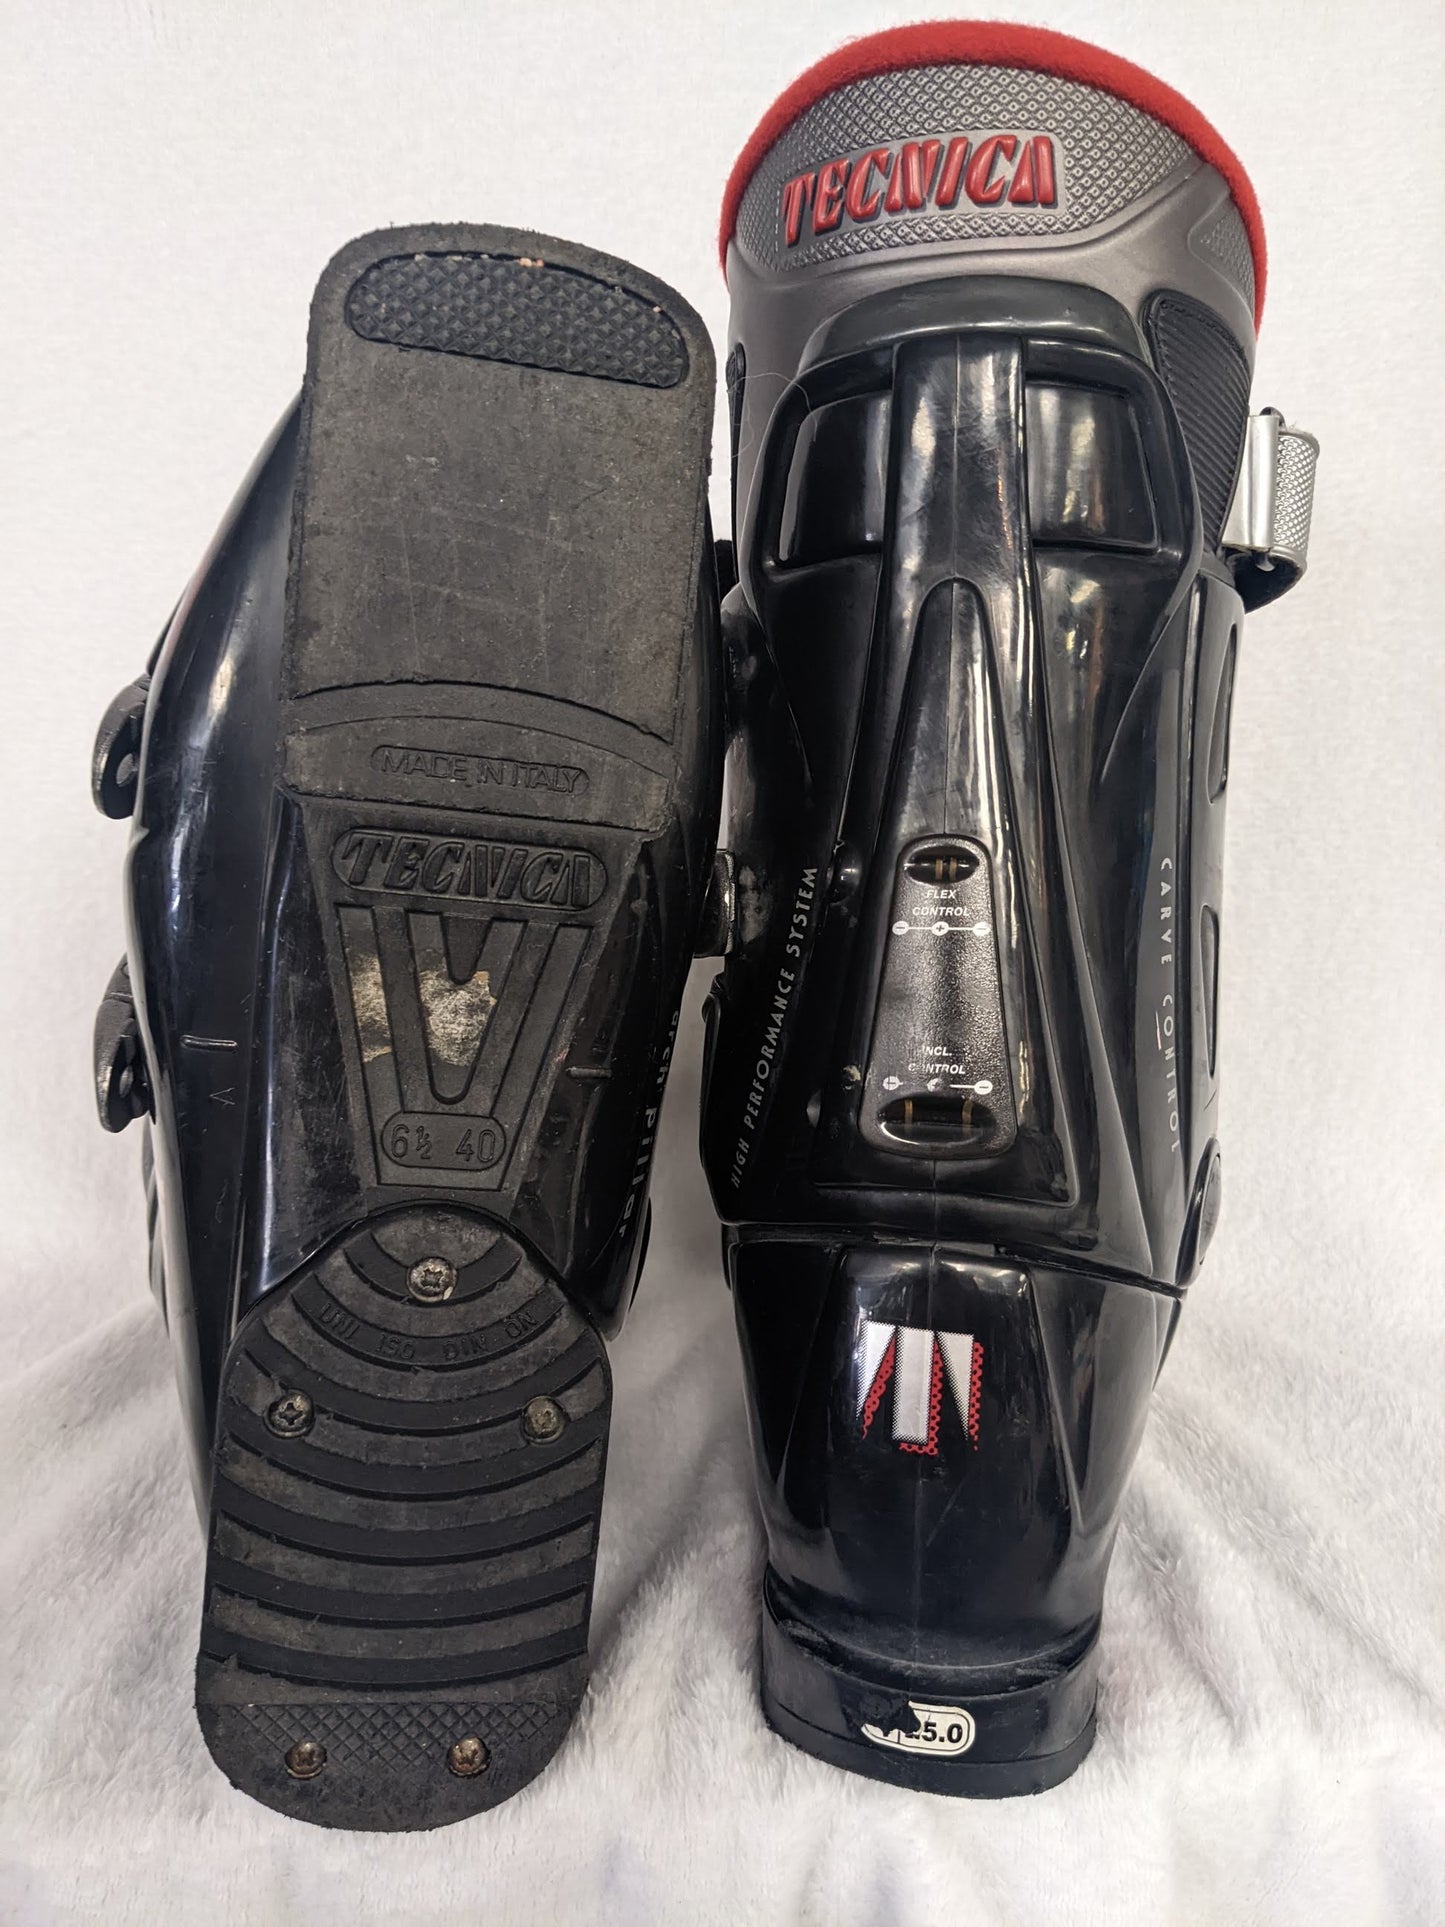 Tecnica Innotec TI-8 Ski Boots Size 25 Color Black Condition Used